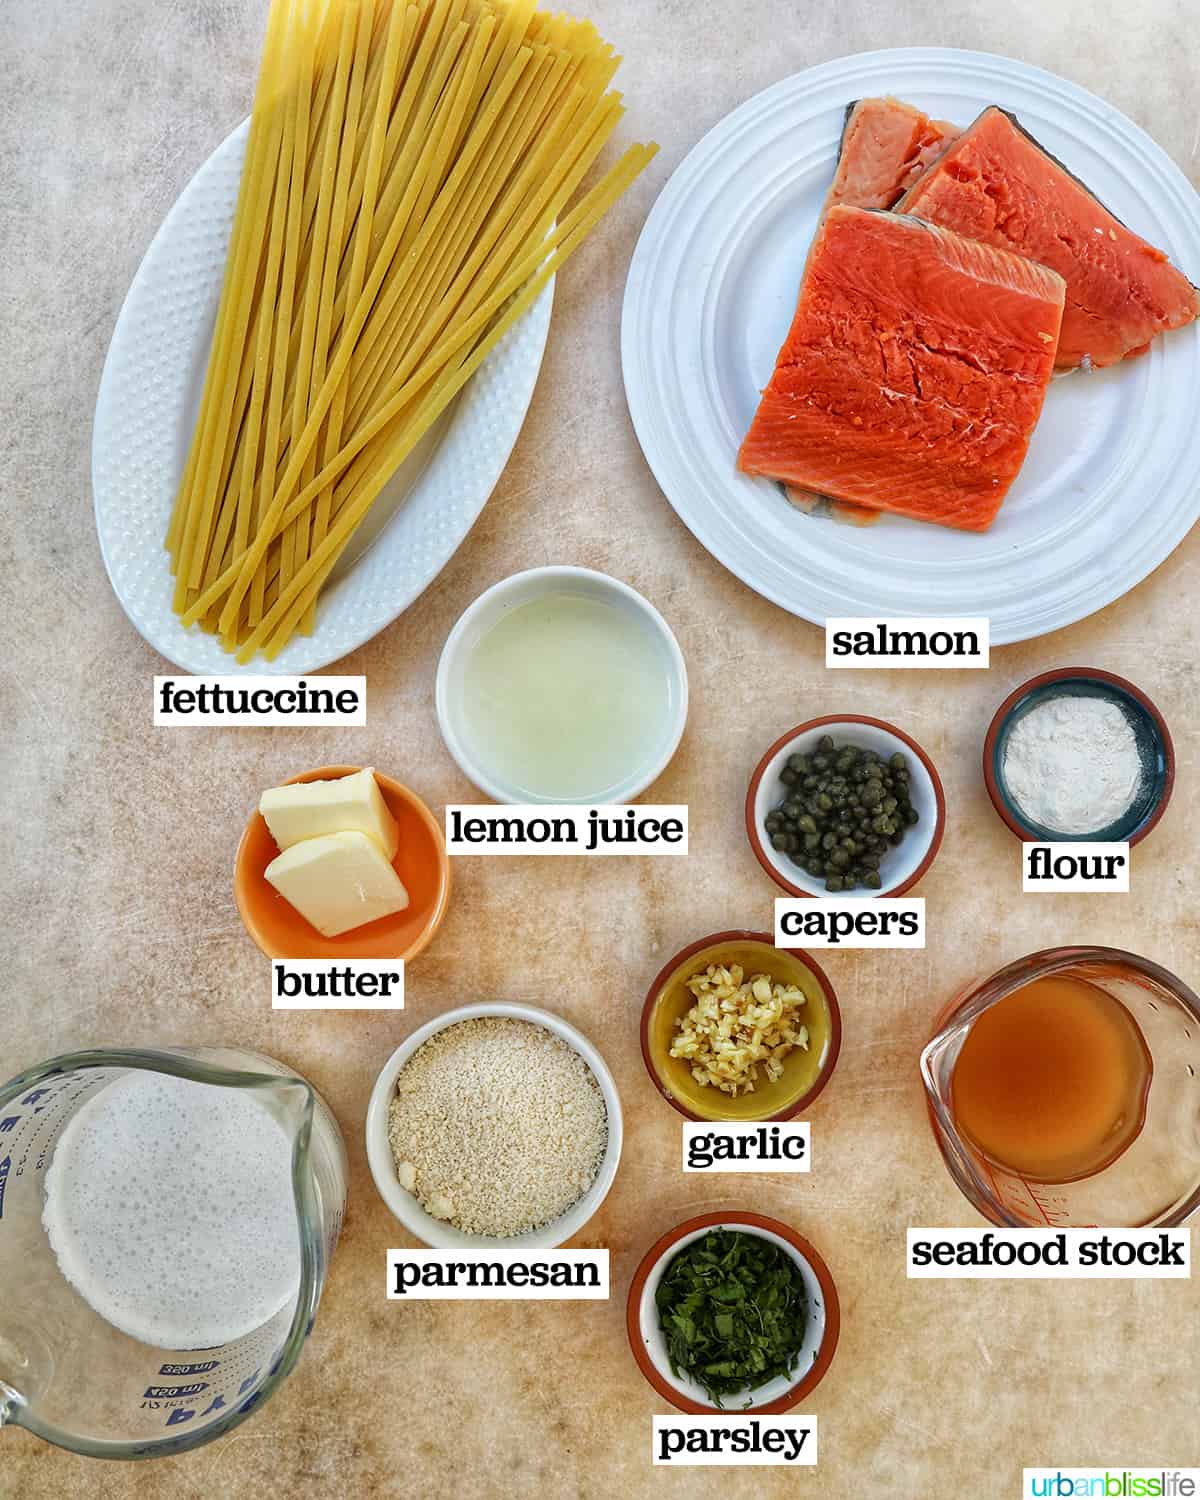 bowls of ingredients to make salmon pasta.